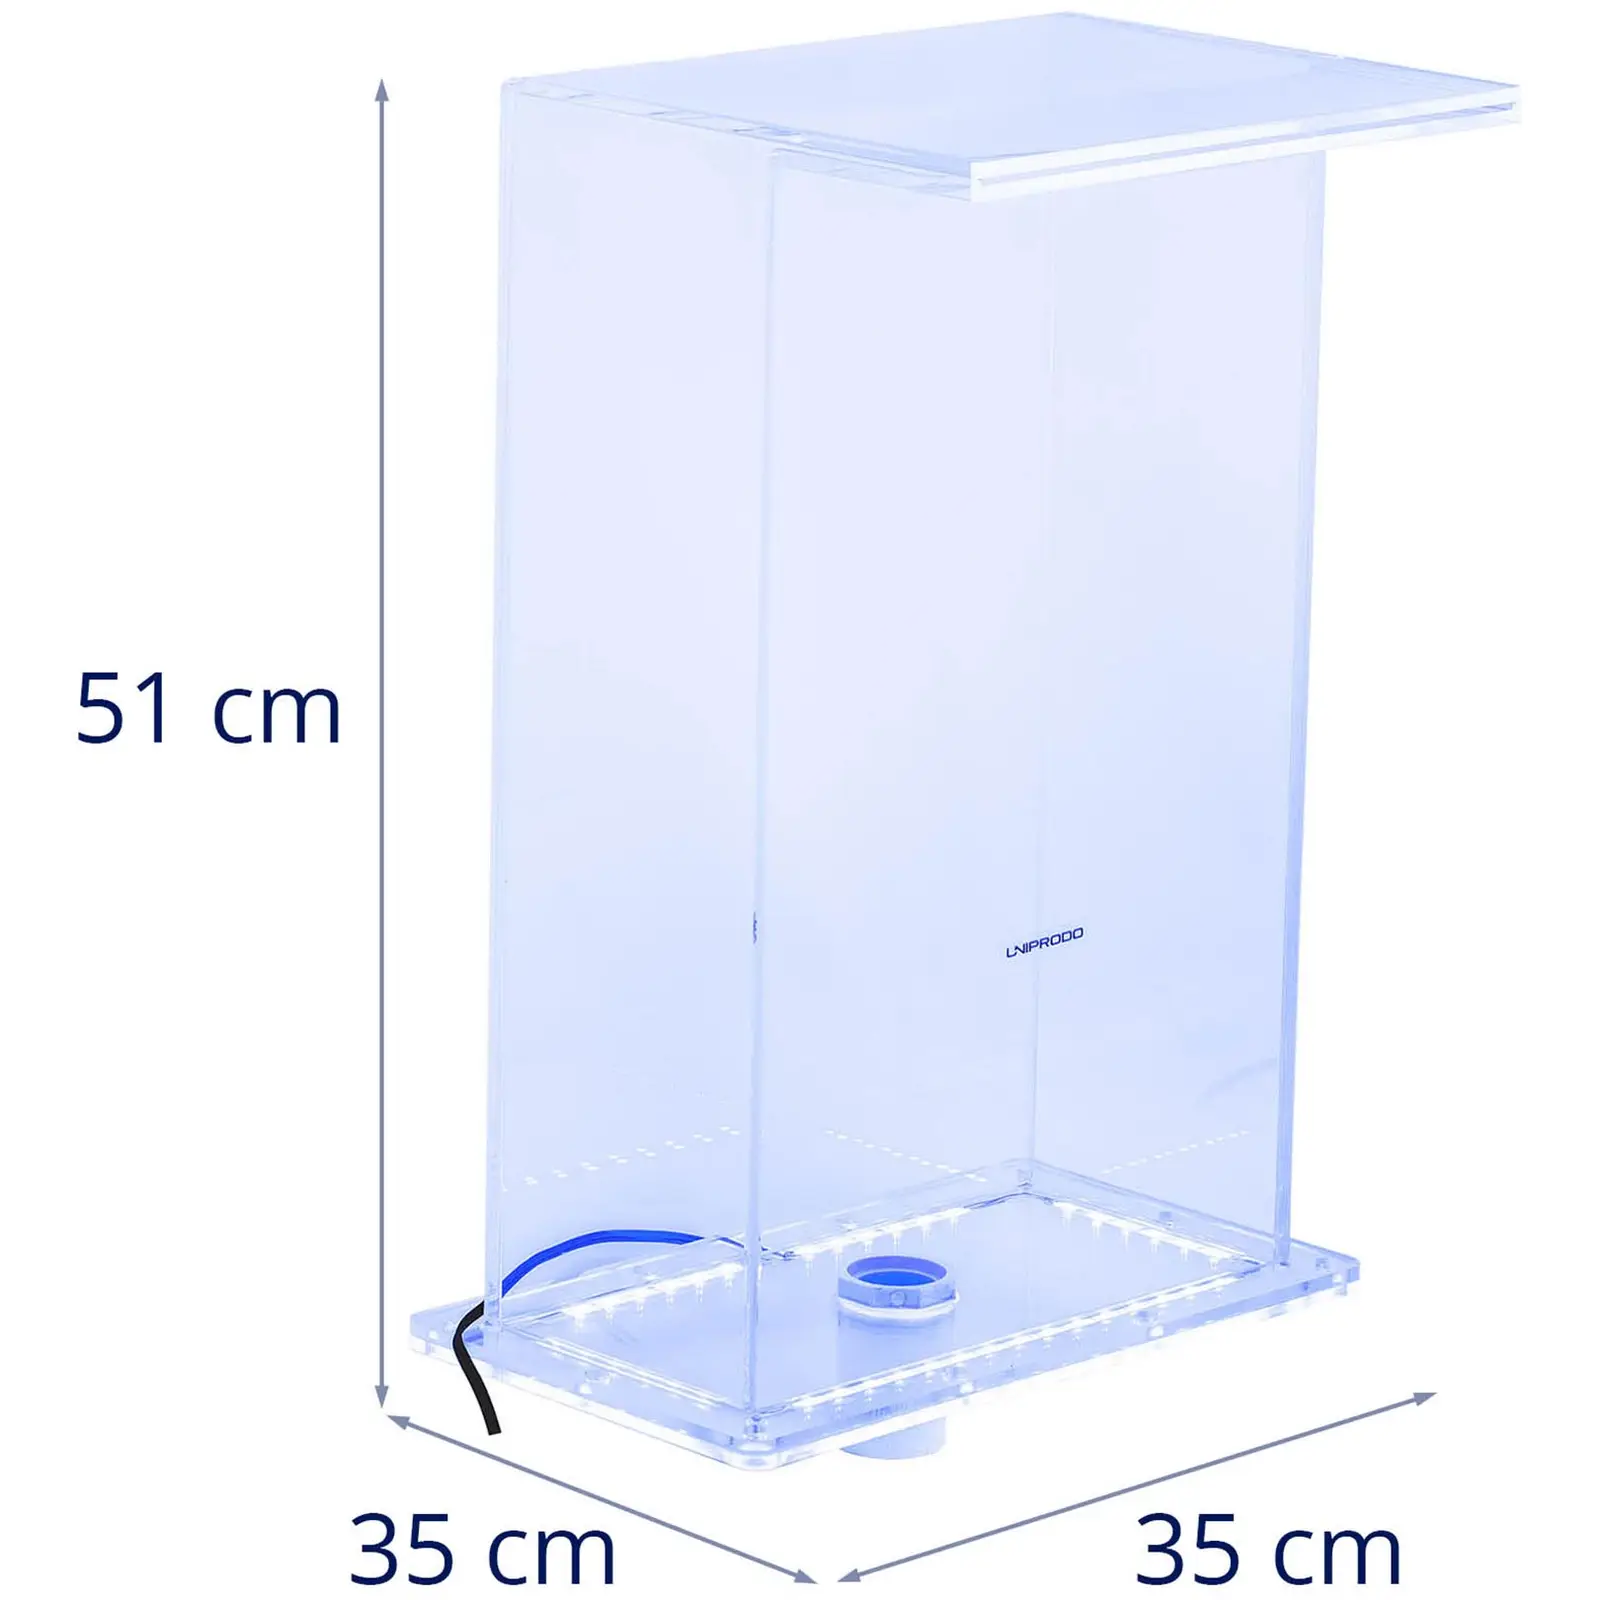 Chrlič vody - výška 52 cm - LED osvětlení - modrá barva